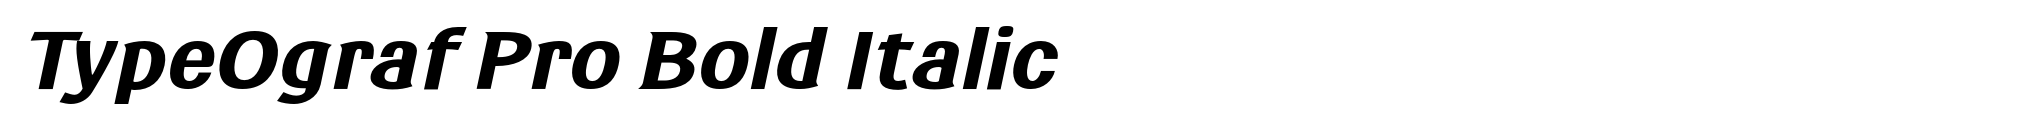 TypeOgraf Pro Bold Italic image